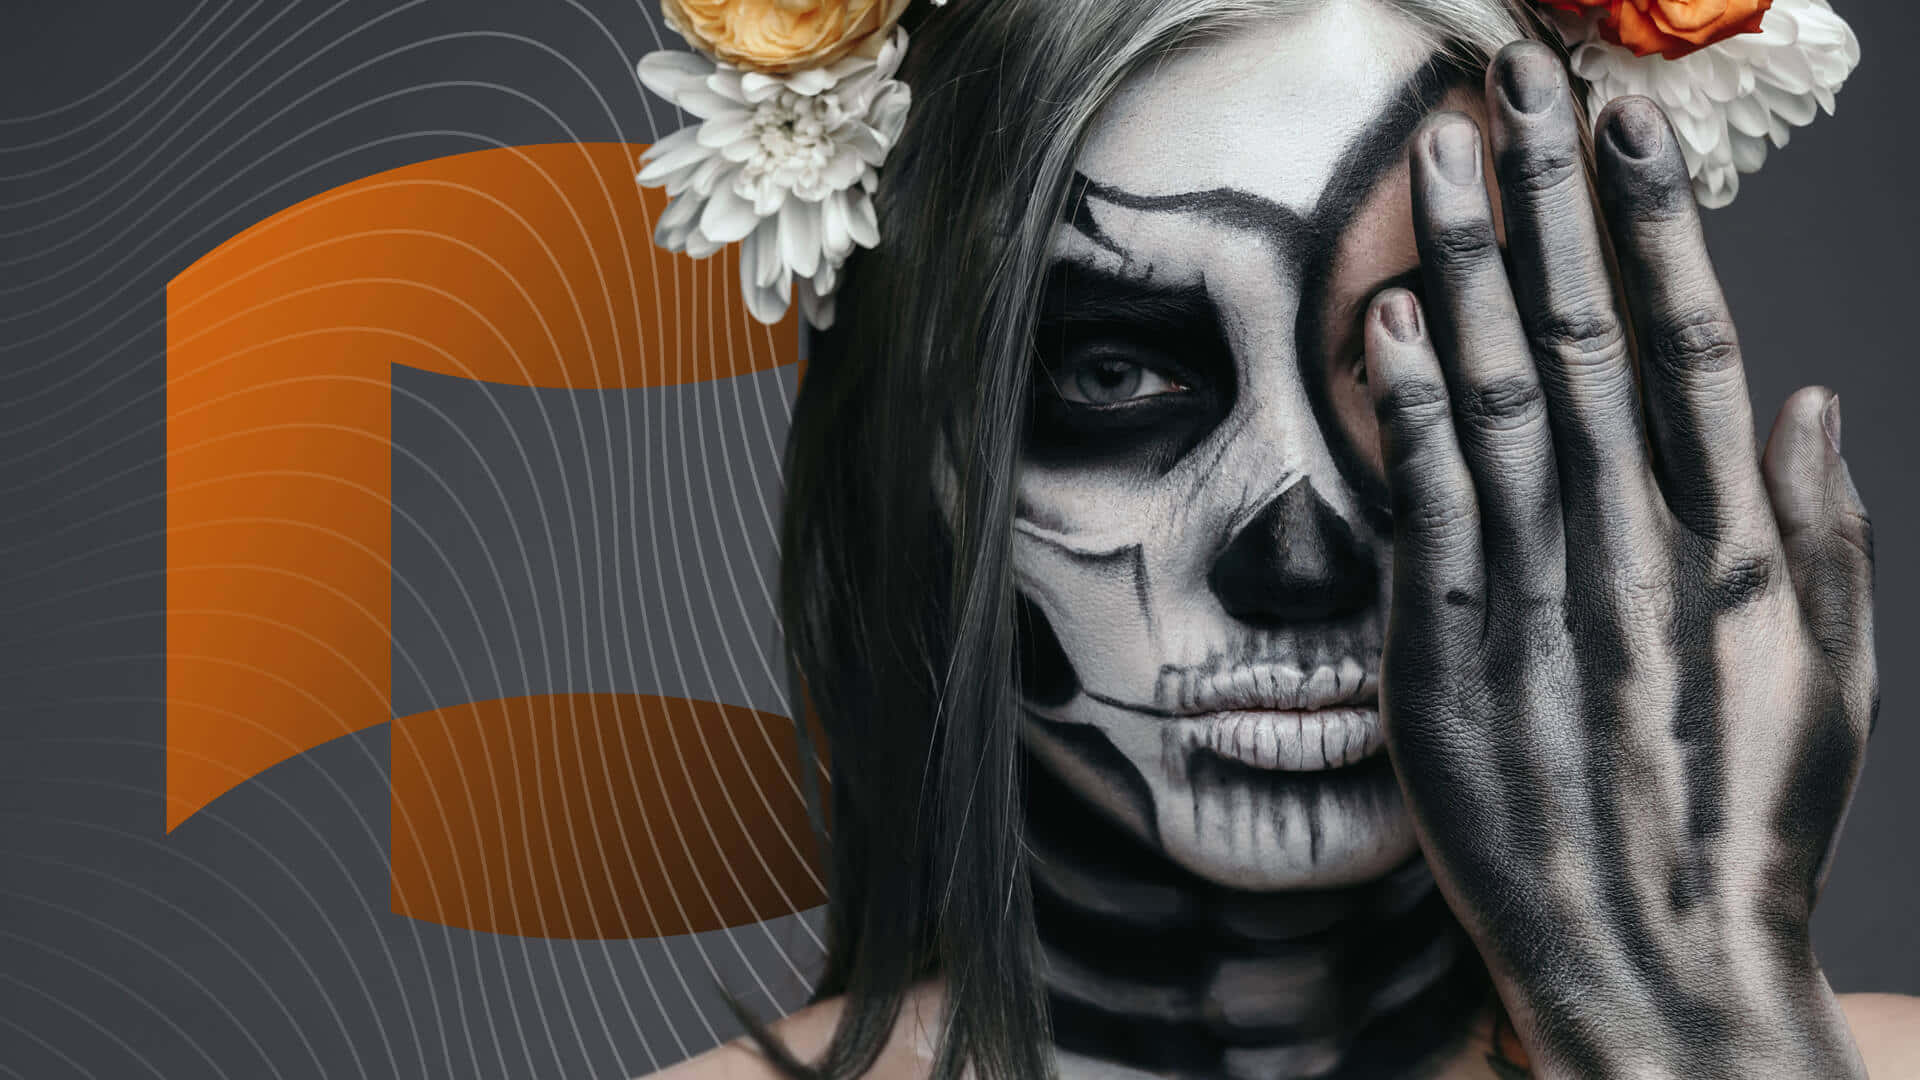 Get creative with your Halloween makeup look! Wallpaper